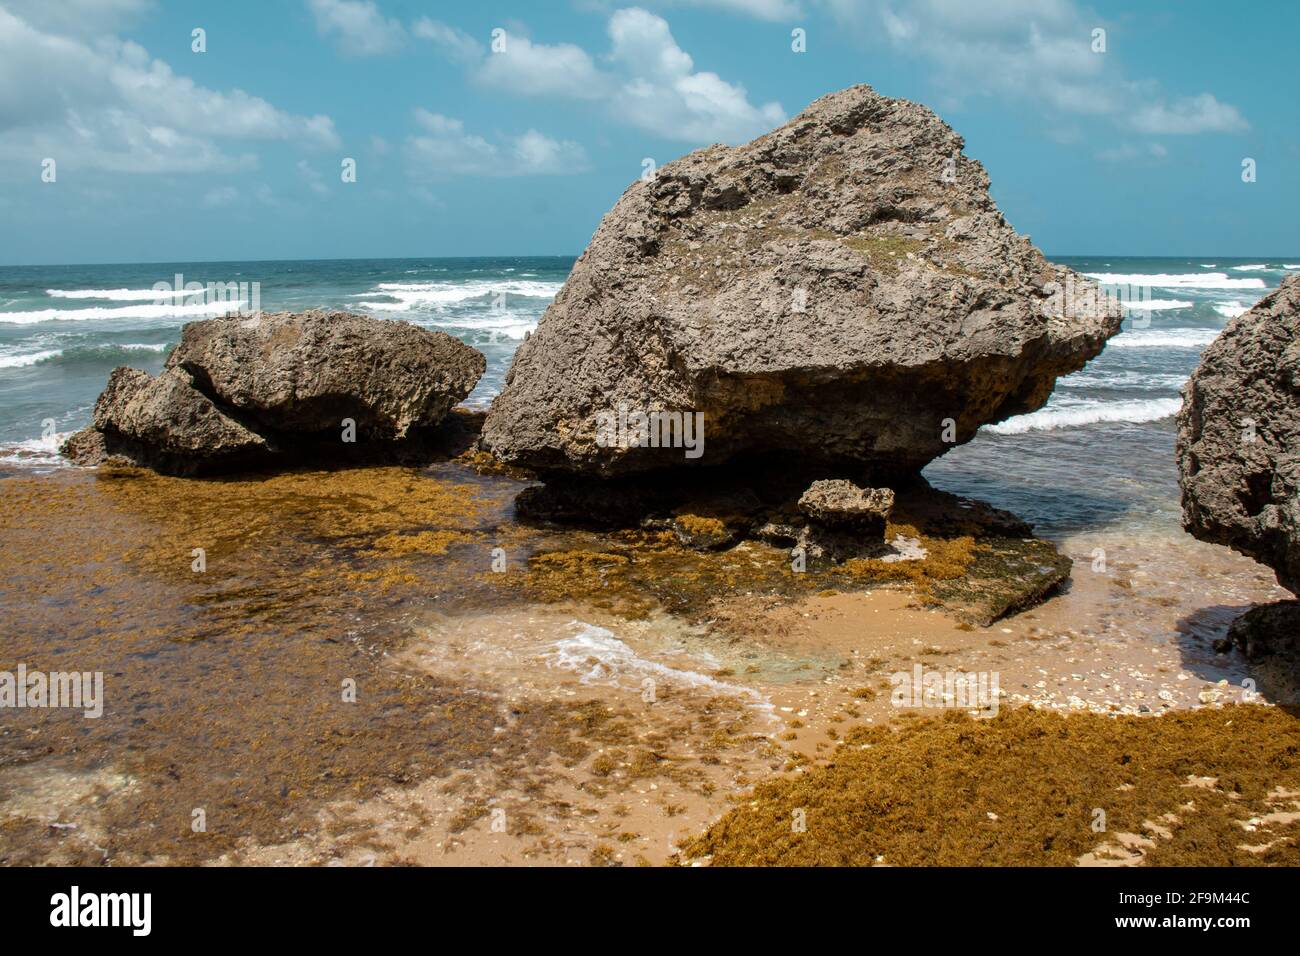 Image des grands rochers sculptés dans l'océan sur la plage de Bathsheba, à la Barbade, entourés d'une épaisse algue de sargassum jaune-orange à marée basse. Banque D'Images